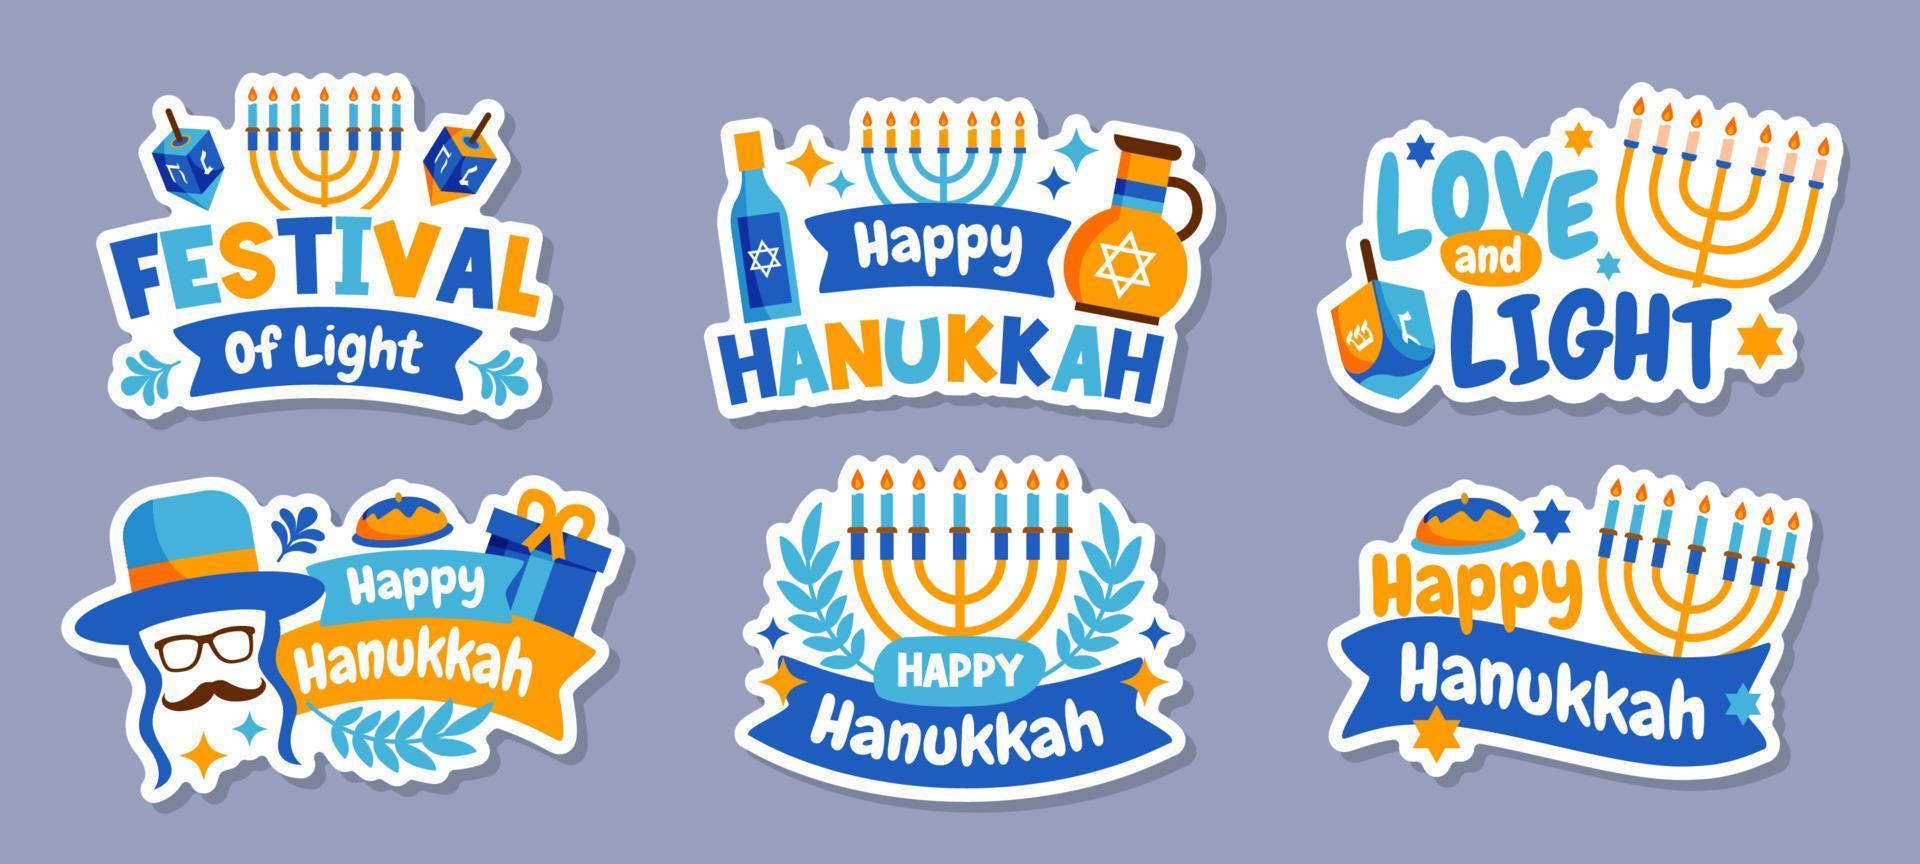 etiqueta engomada feliz de hanukkah vector